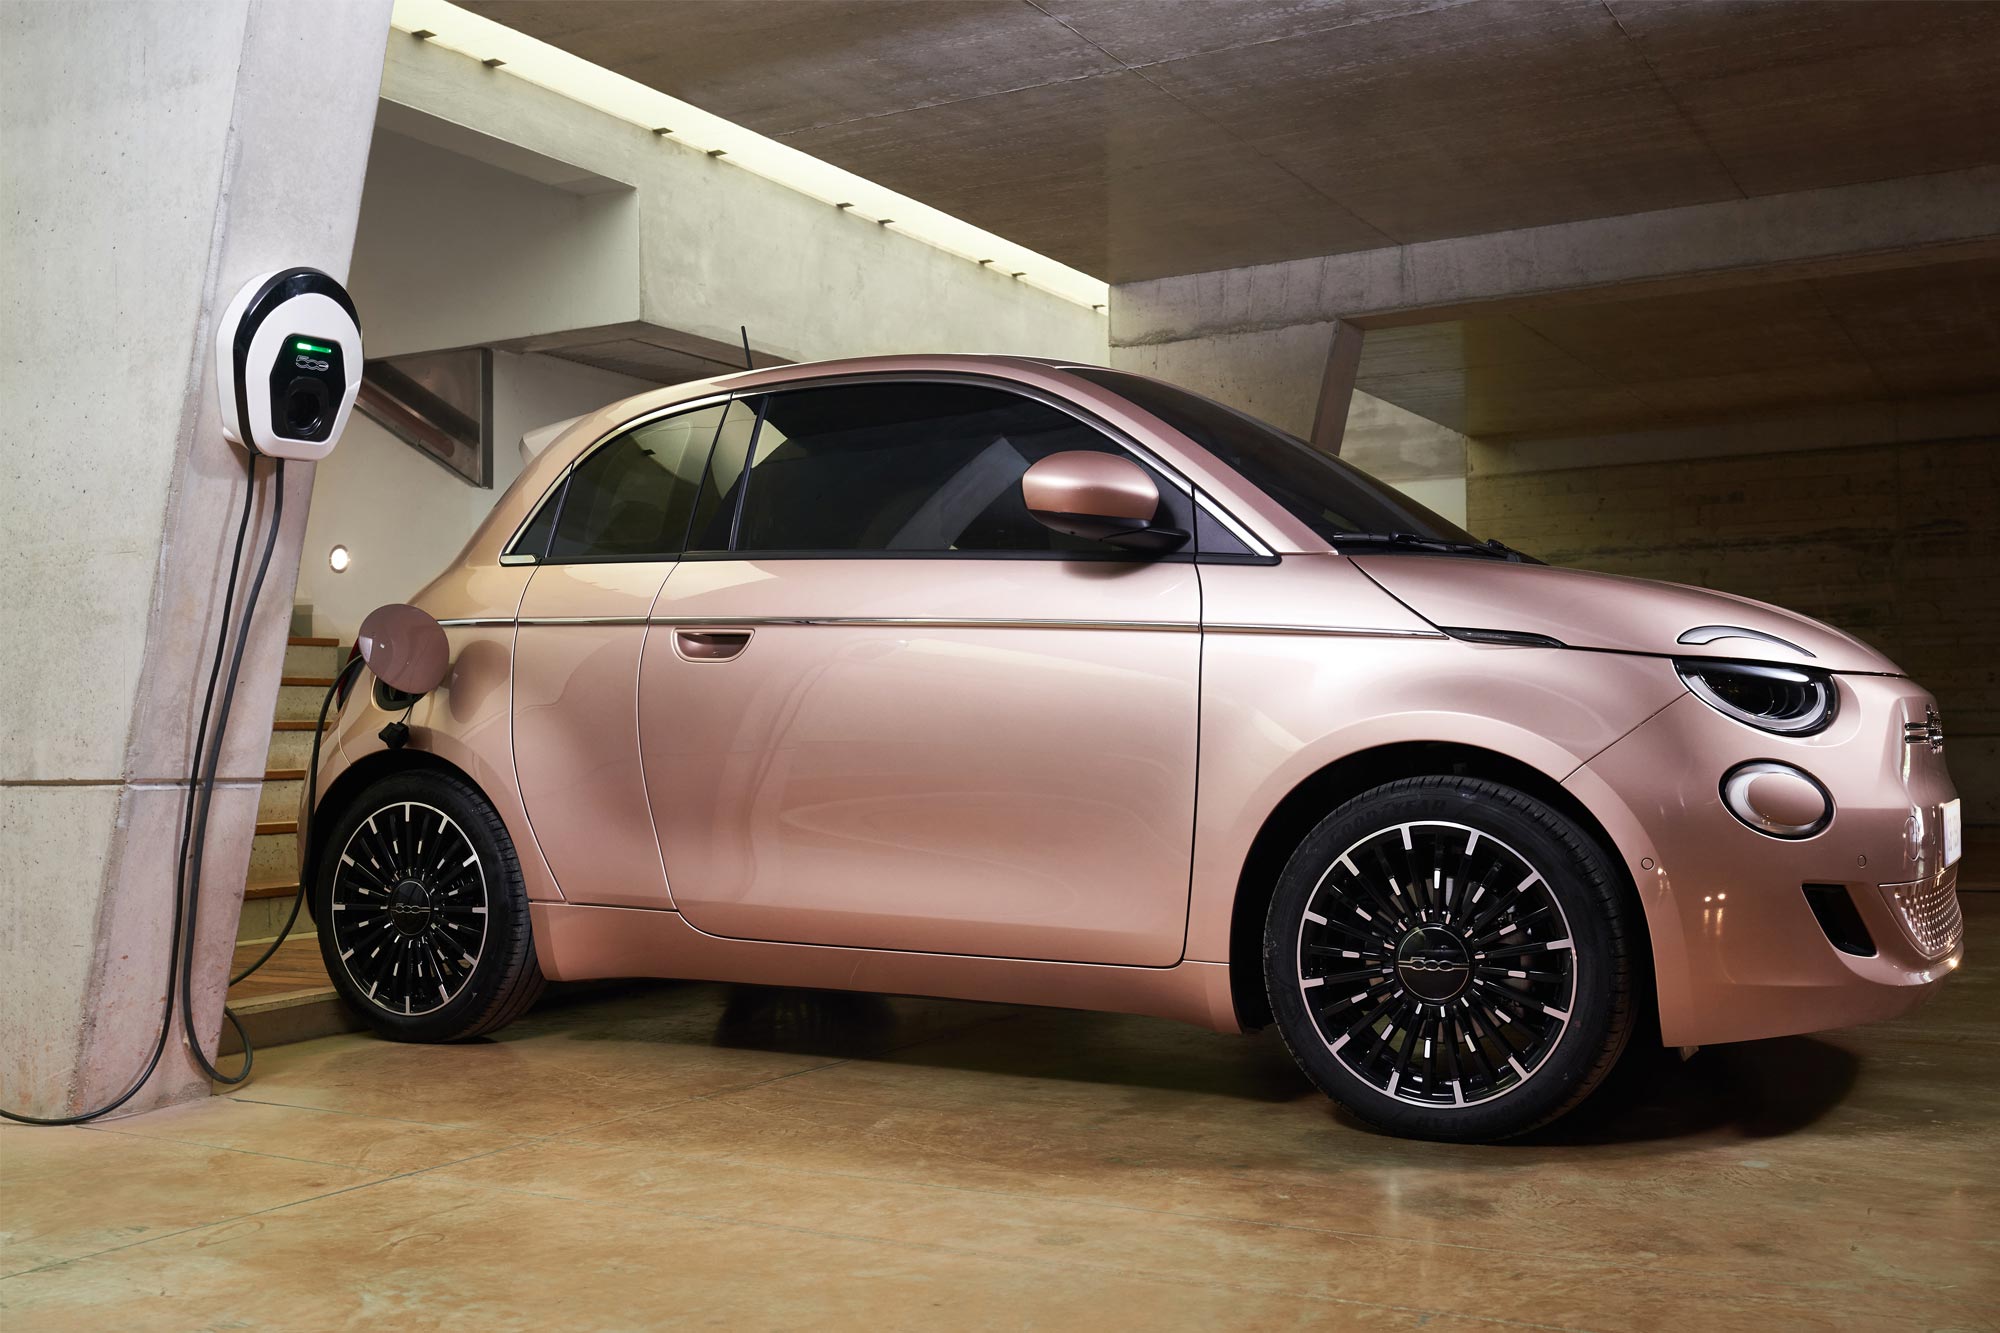 Διαθέσιμη στην Ελληνική αγορά η γκάμα του νέου ηλεκτρικού Fiat 500